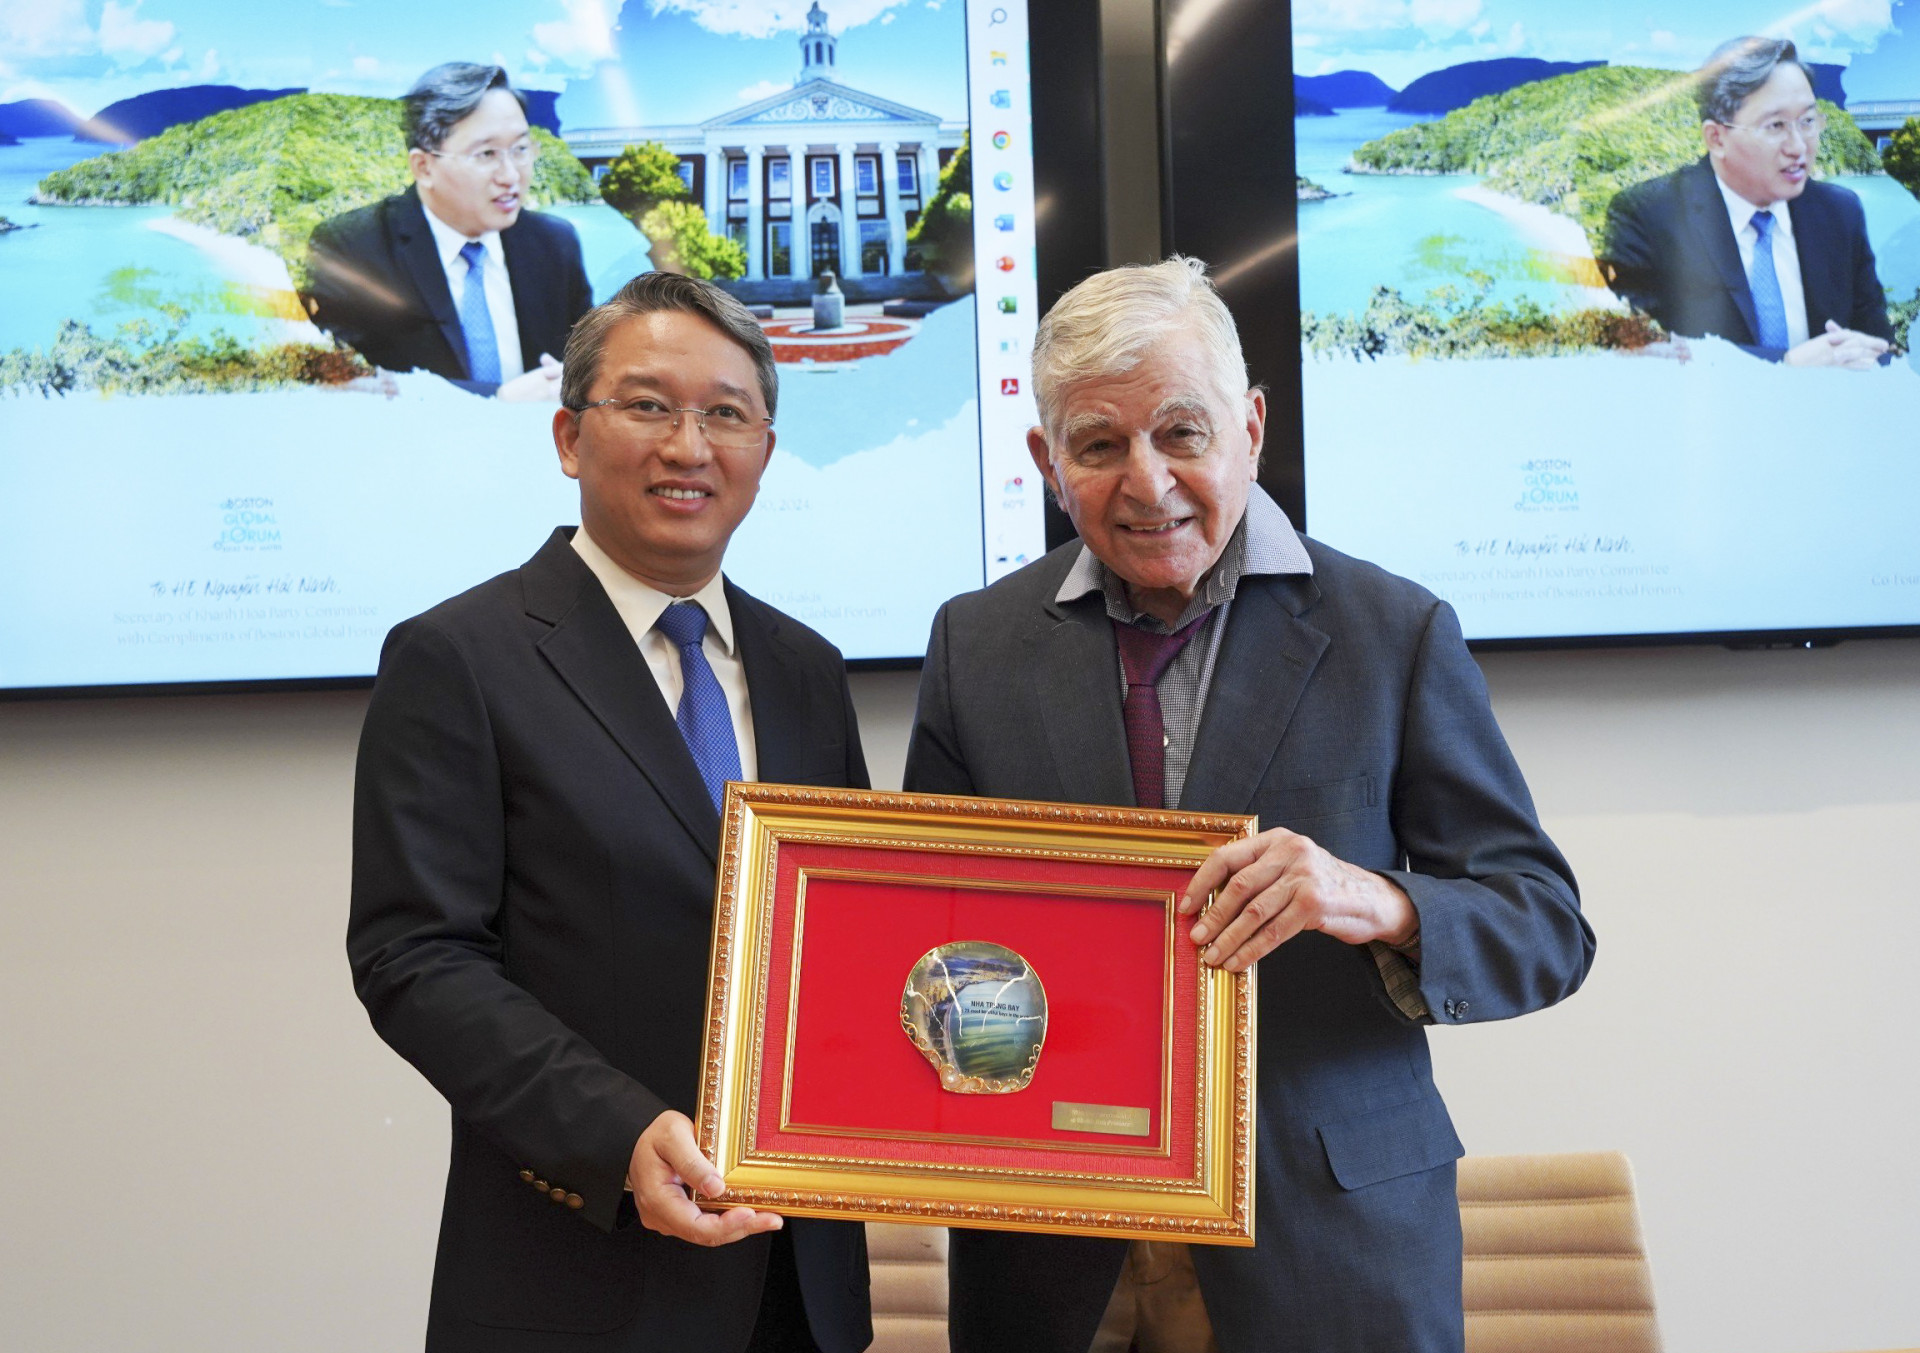 Bí thư Tỉnh ủy Nguyễn Hải Ninh tặng quà lưu niệm cho nguyên Thống đốc Michael Dukakis, Đồng sáng lập và Chủ tịch Diễn đàn toàn cầu Boston.